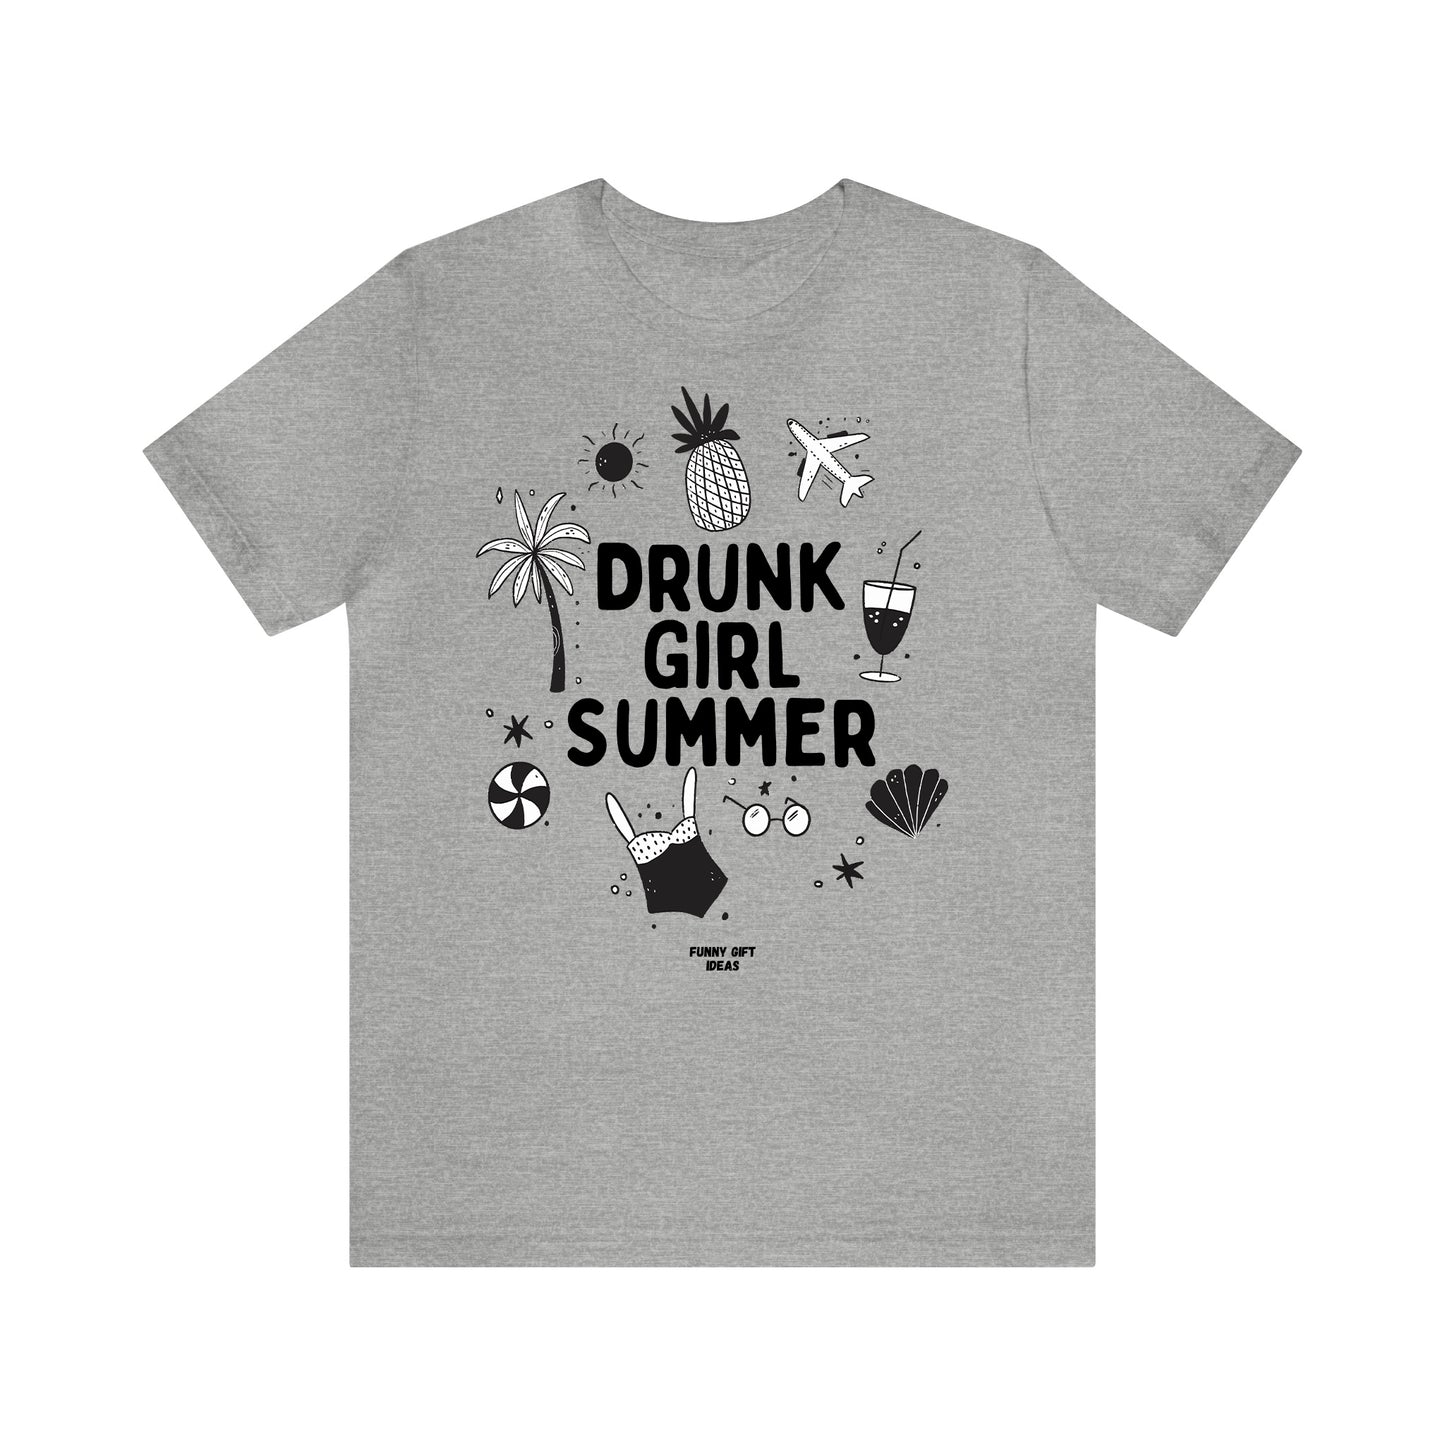 Funny Shirts for Women - Drunk Girl Summer - Women's T Shirts